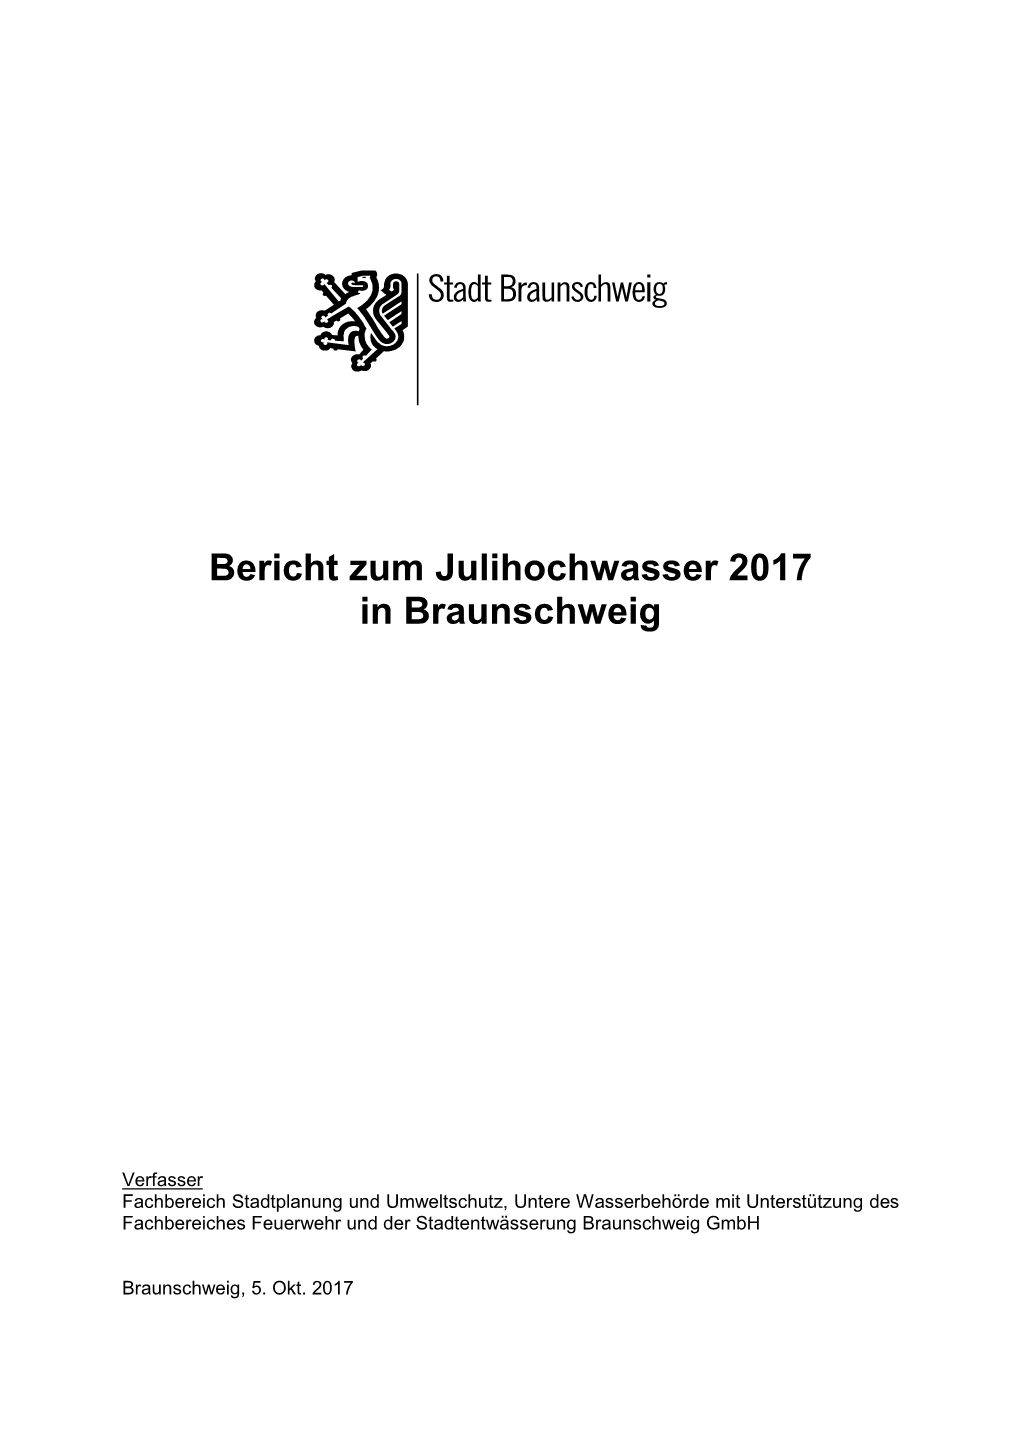 Bericht Zum Julihochwasser 2017 in Braunschweig